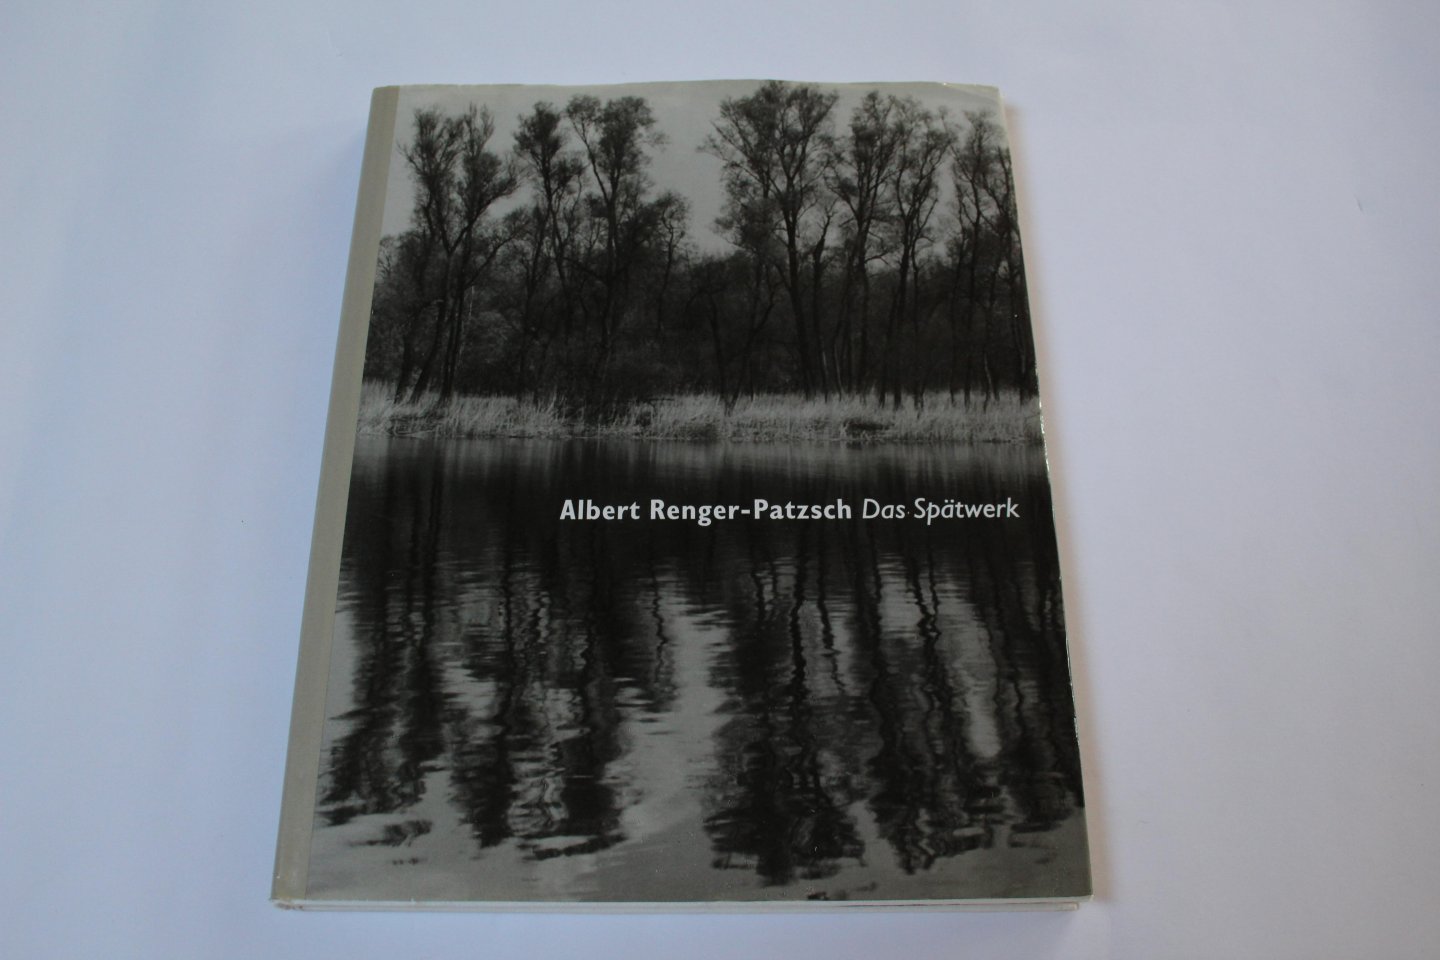 Albert Renger-Patzsch - Albert Renger-Patzsch: Das Spatwerk (Late Work)